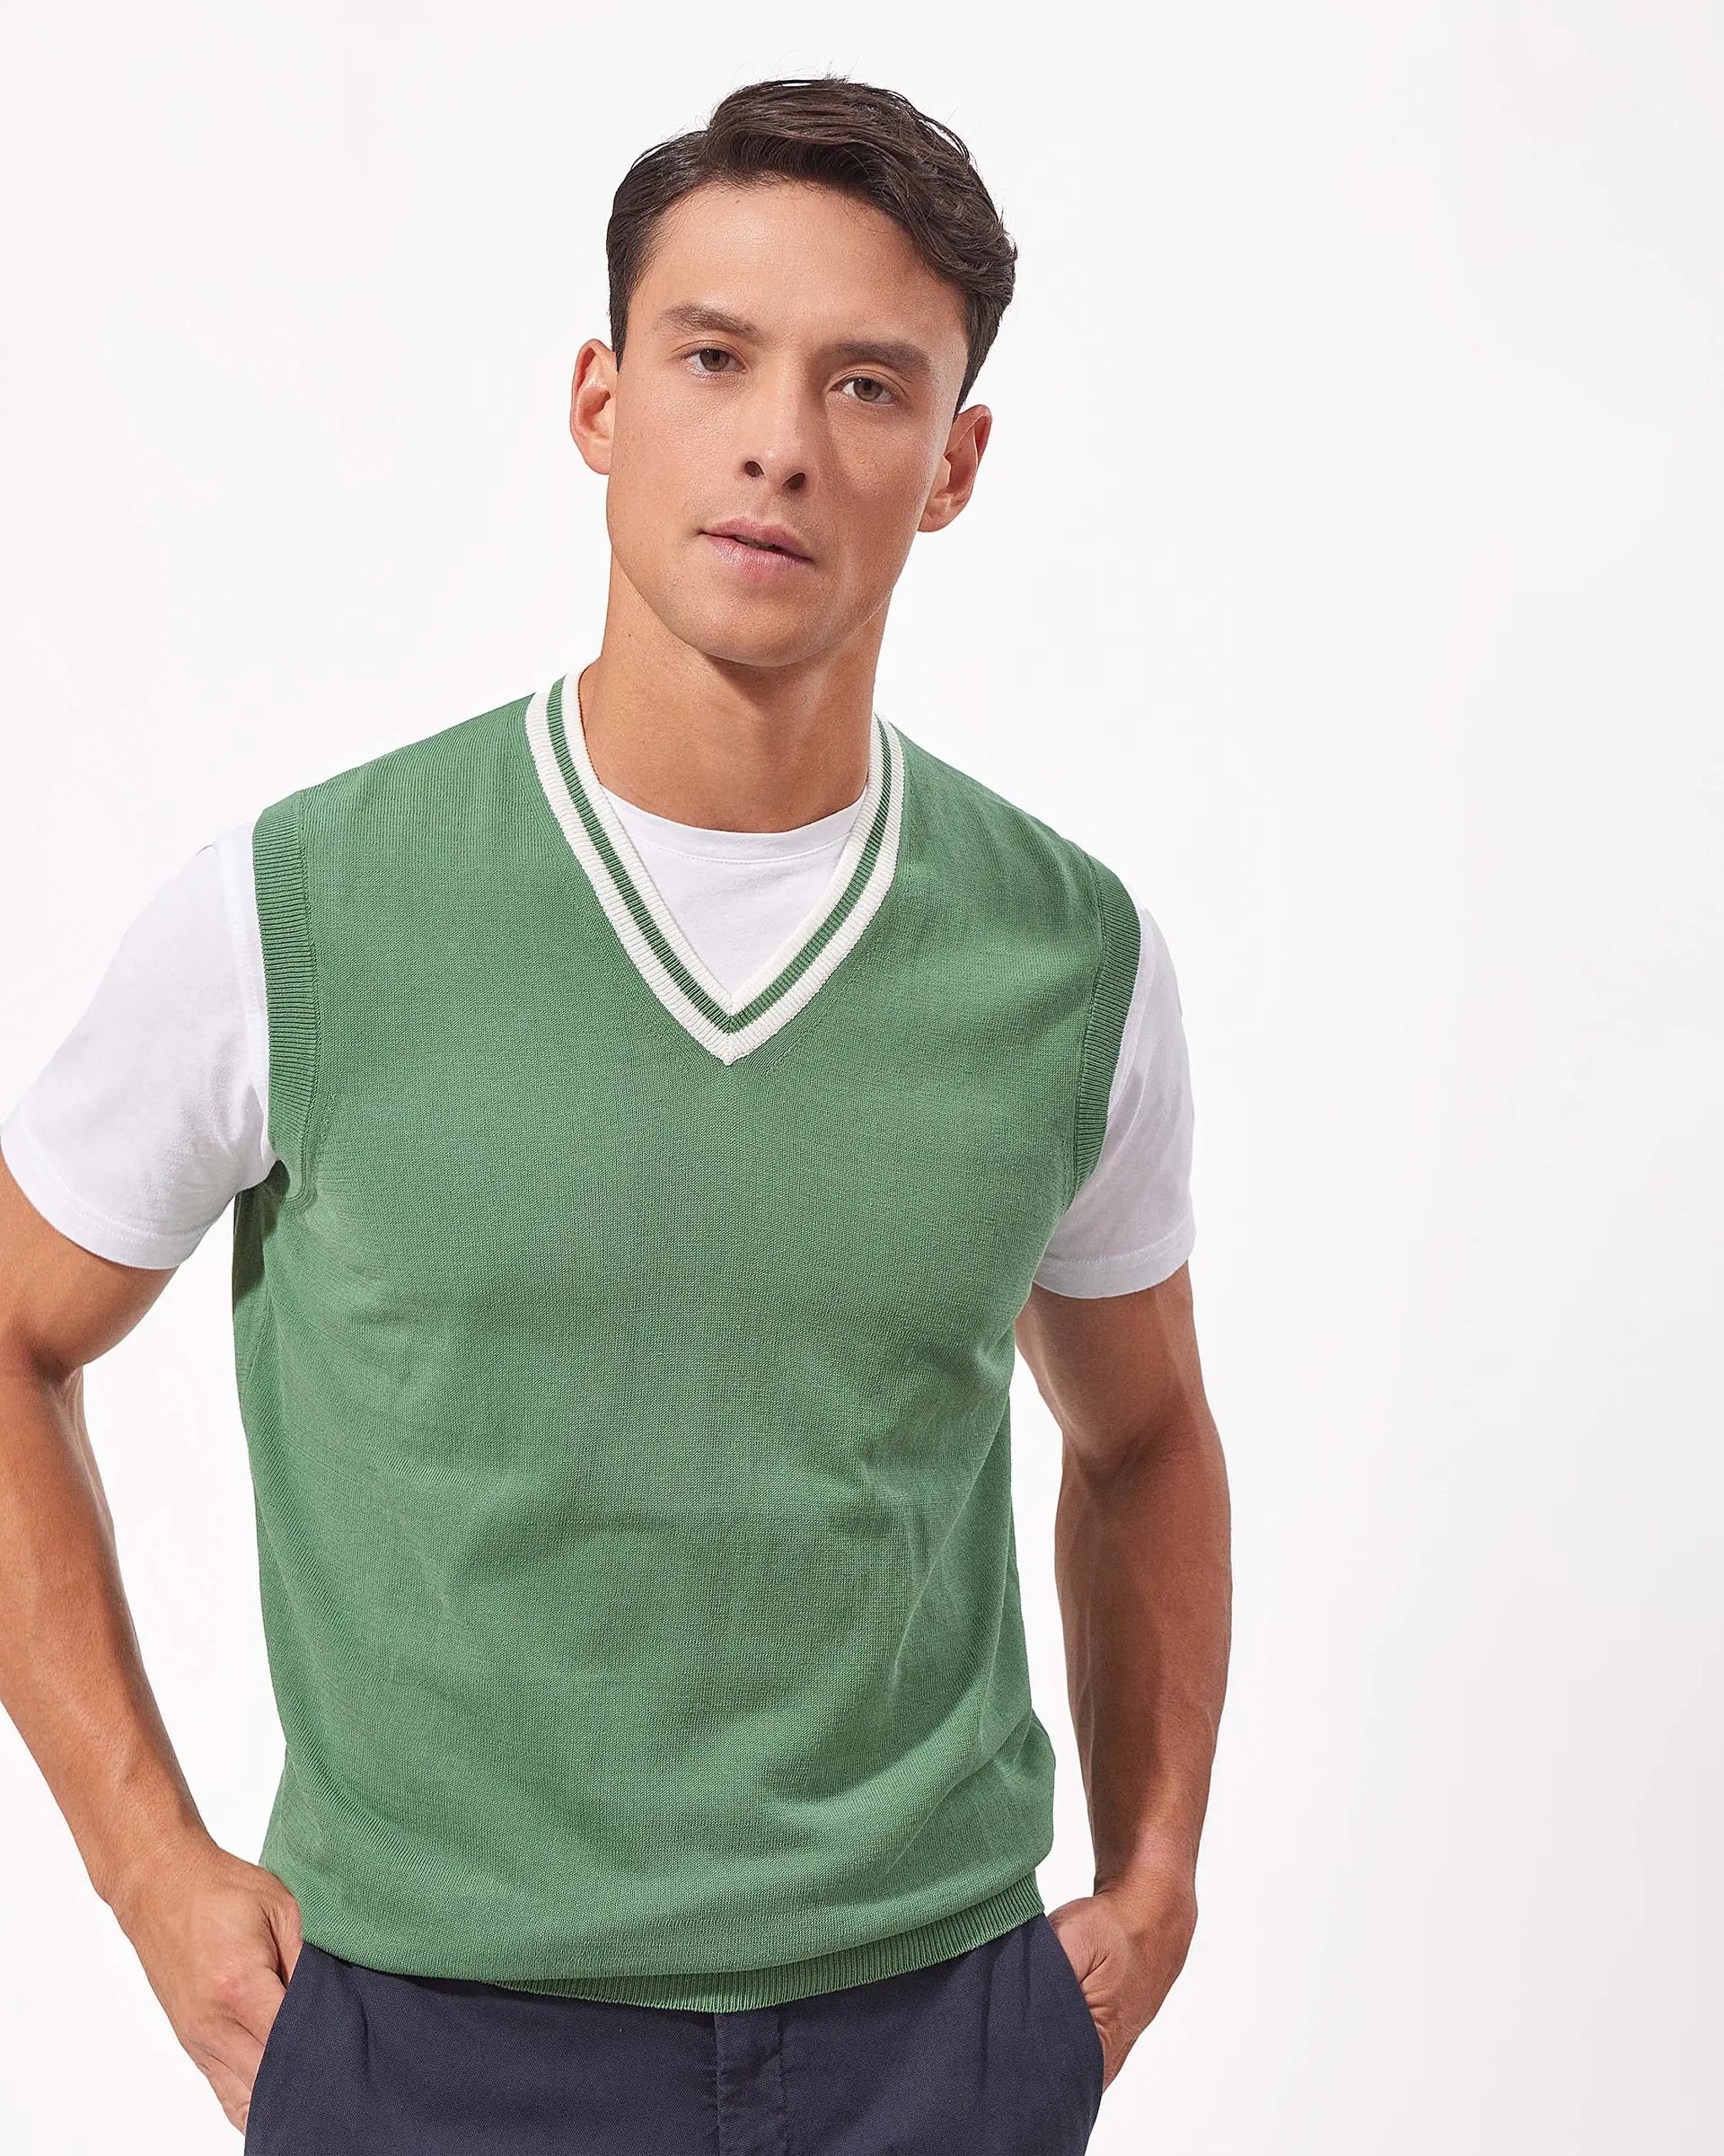 Emerald Green cotton v-neck sweater vest - 12 gauge
